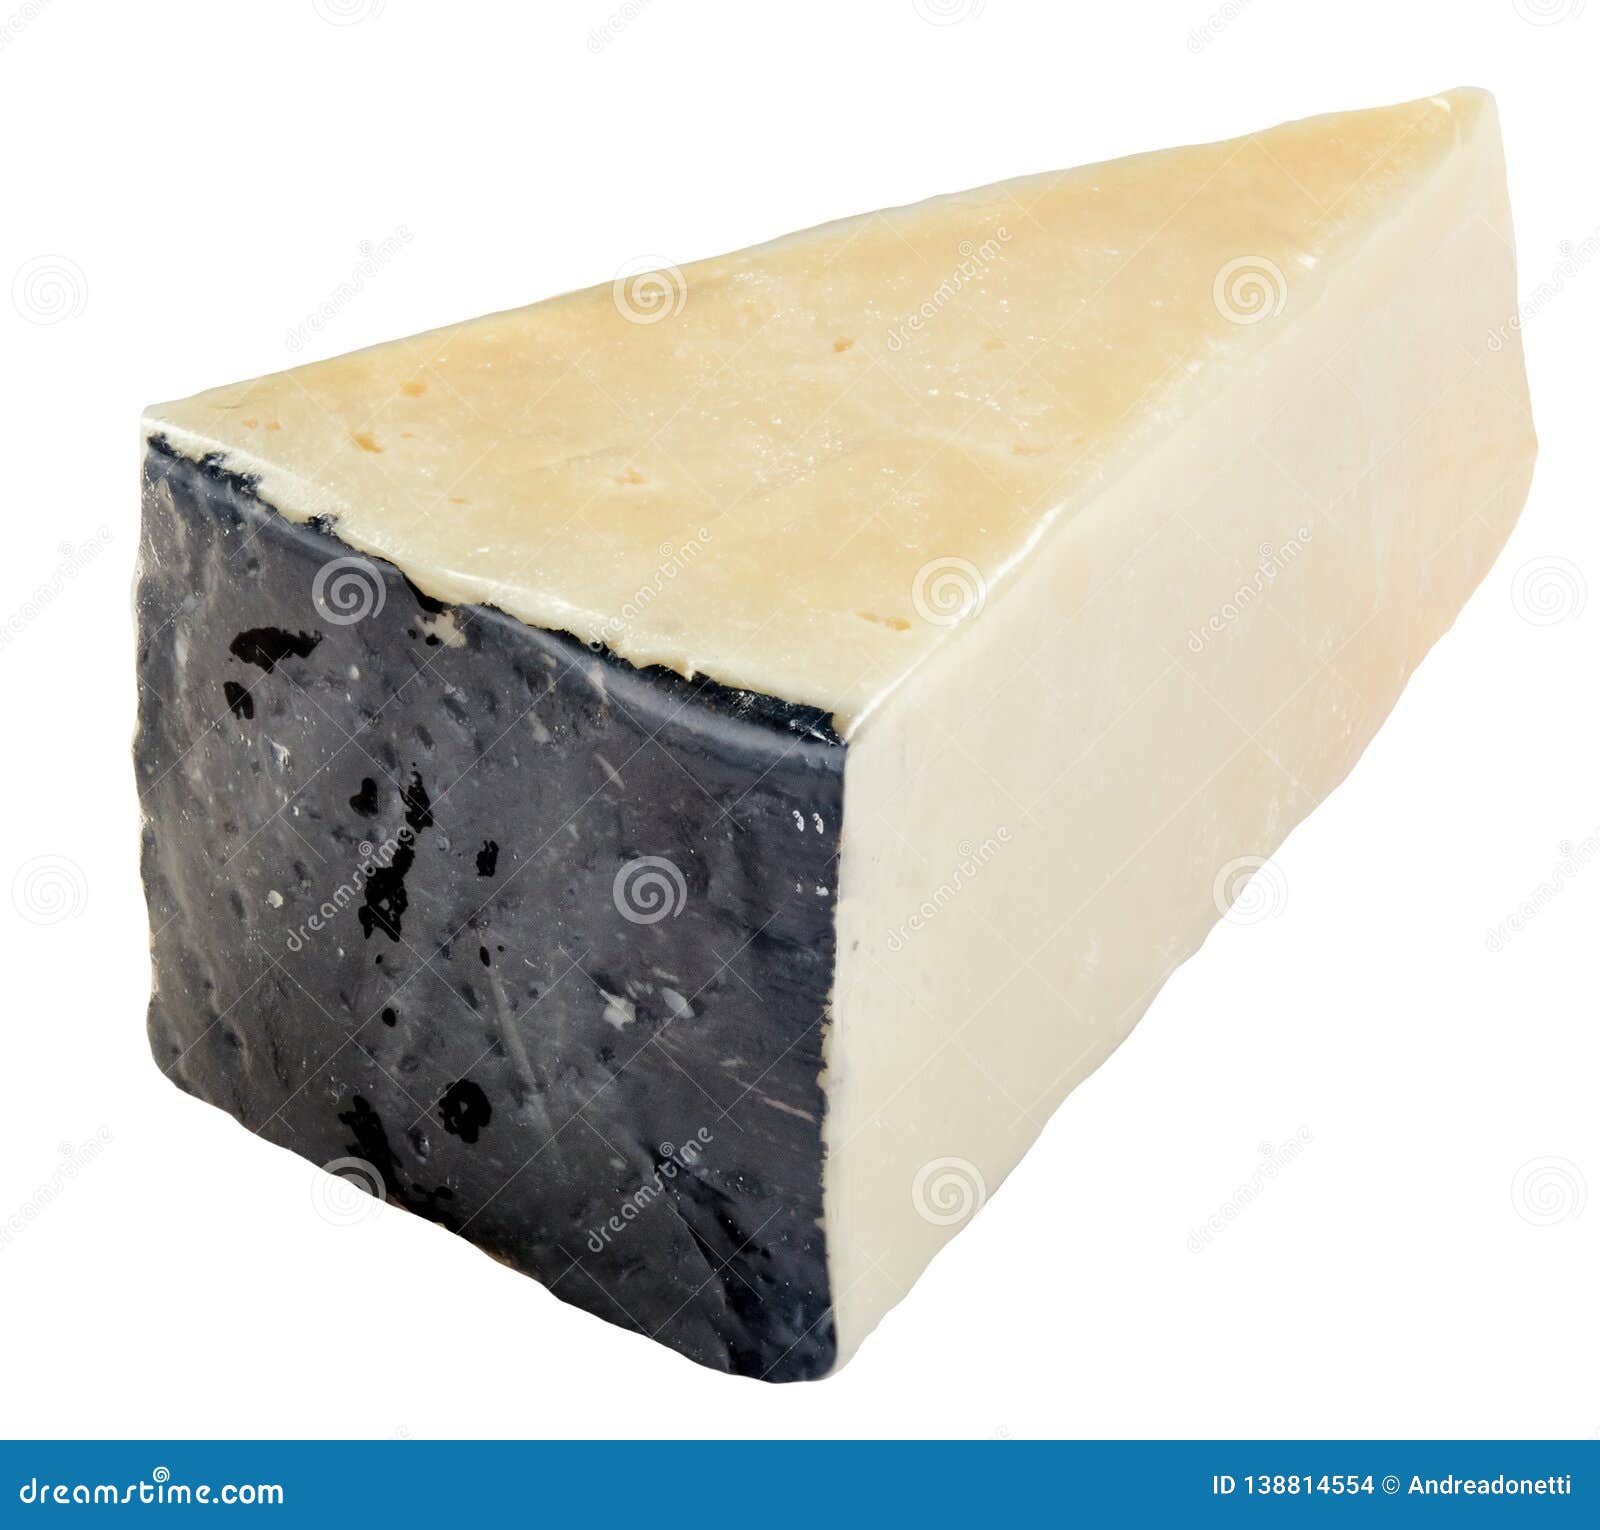 slice of pecorino romano cheese